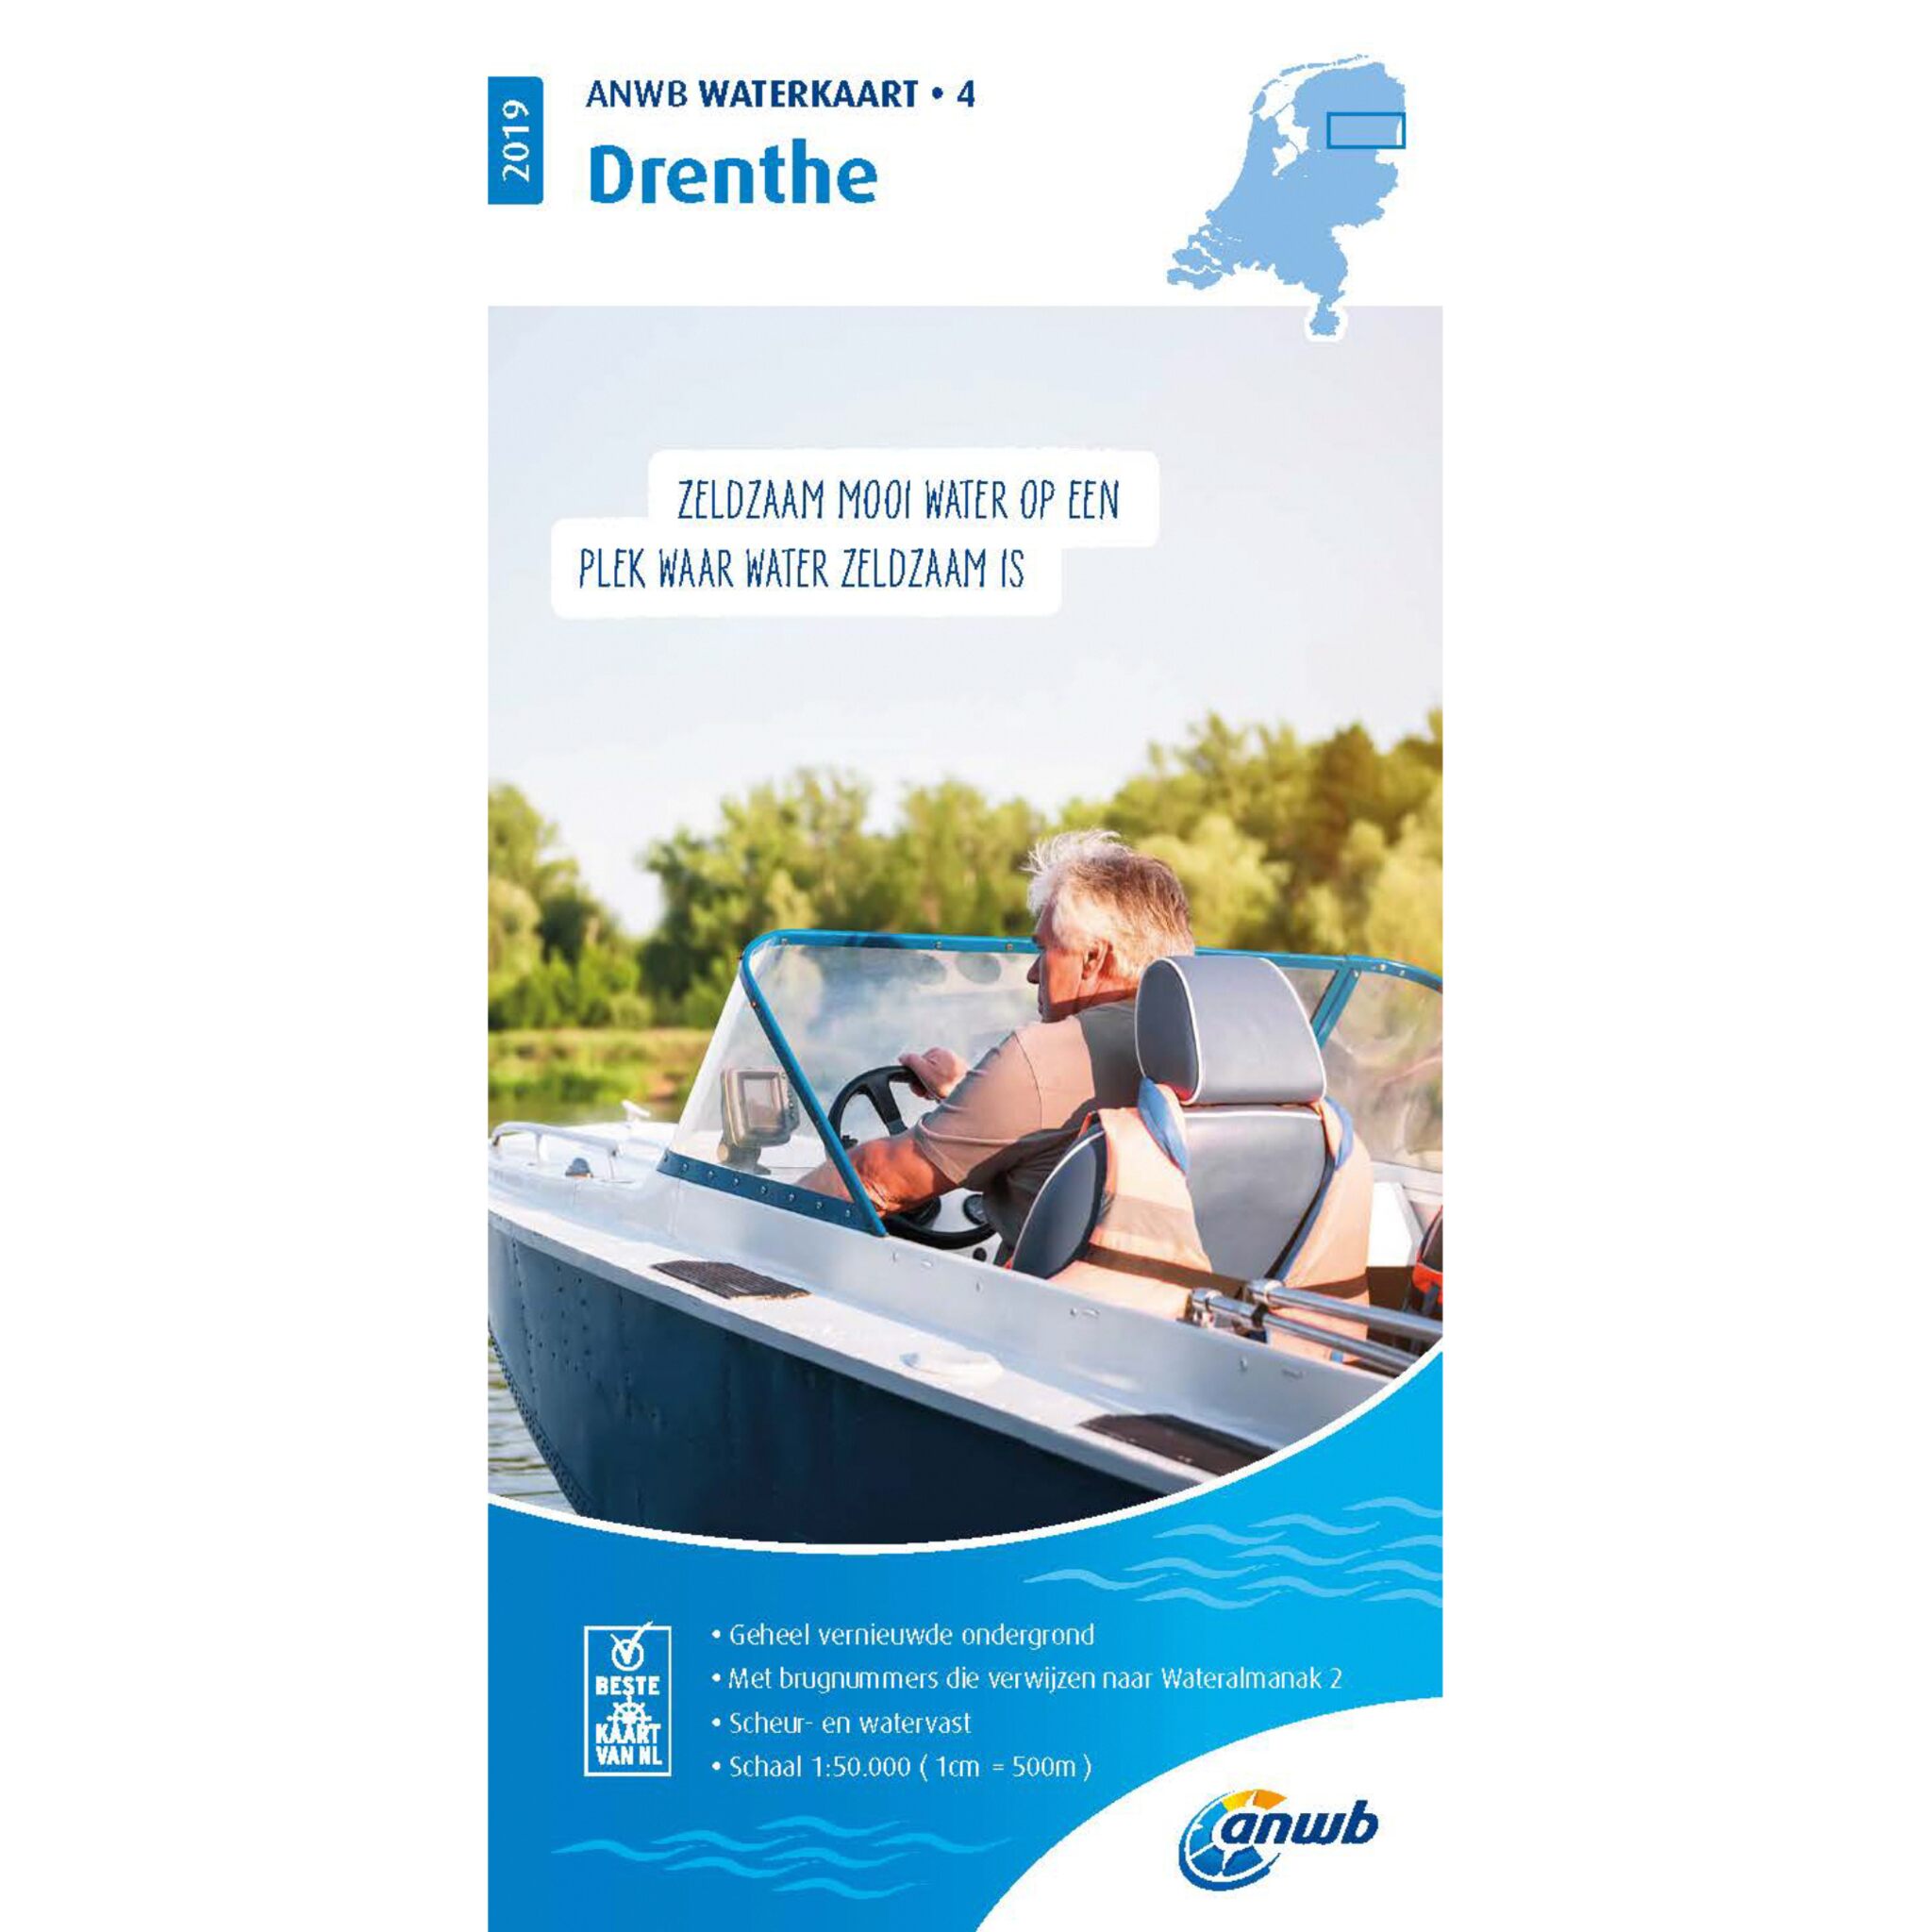 Waterkaart 4 Drenthe 2019